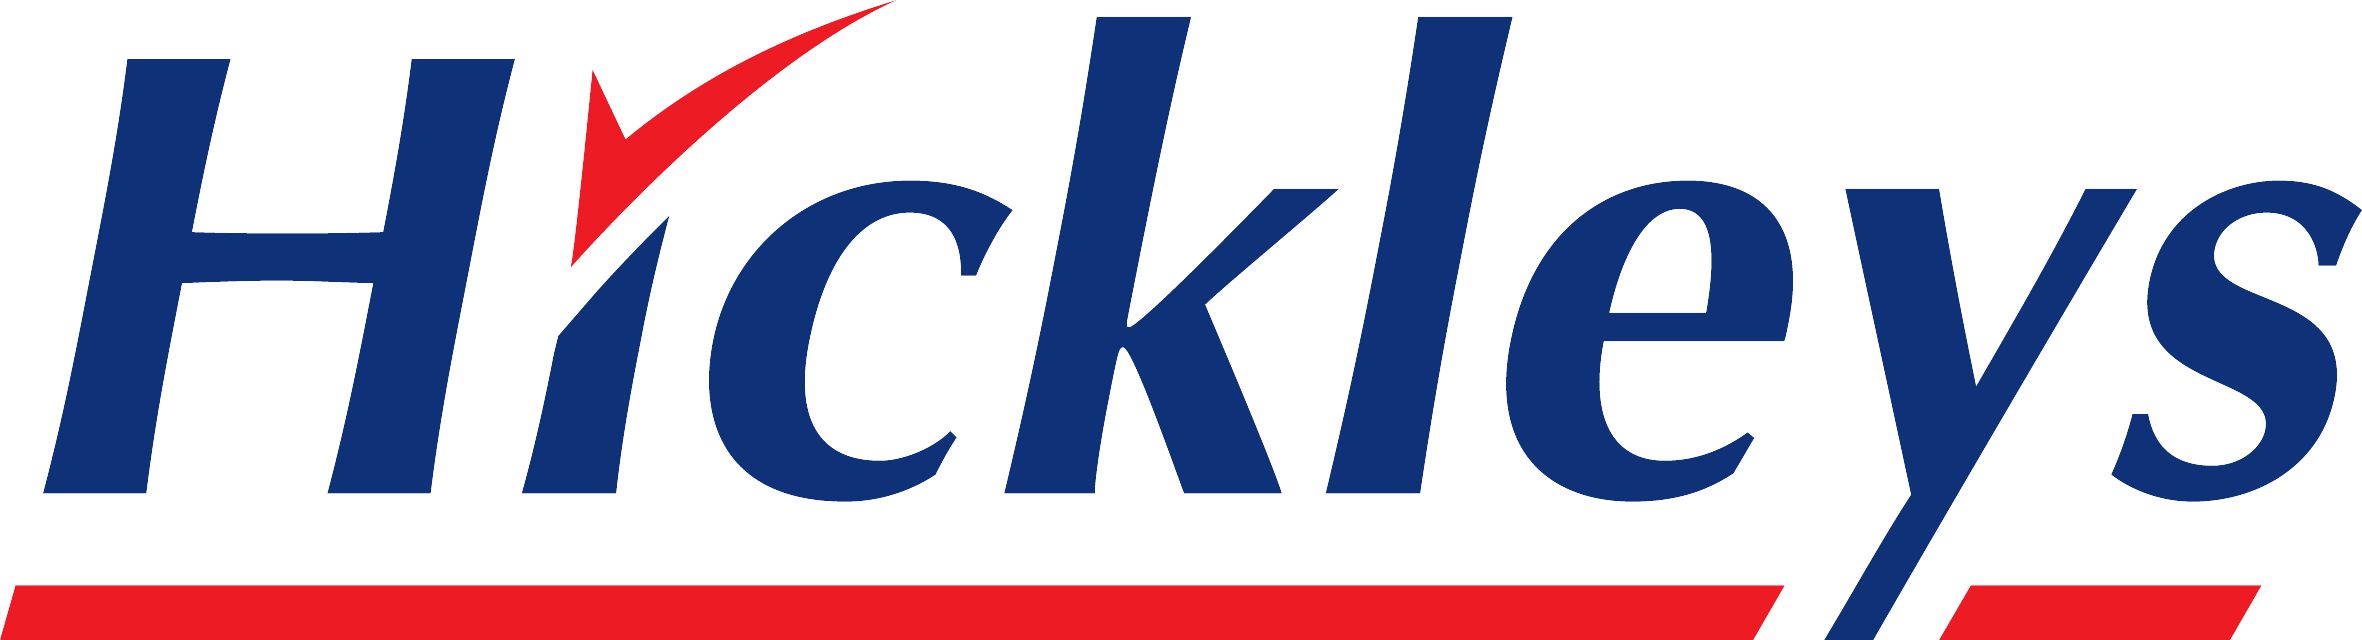 hickleys_logo_standard 2019 JPG